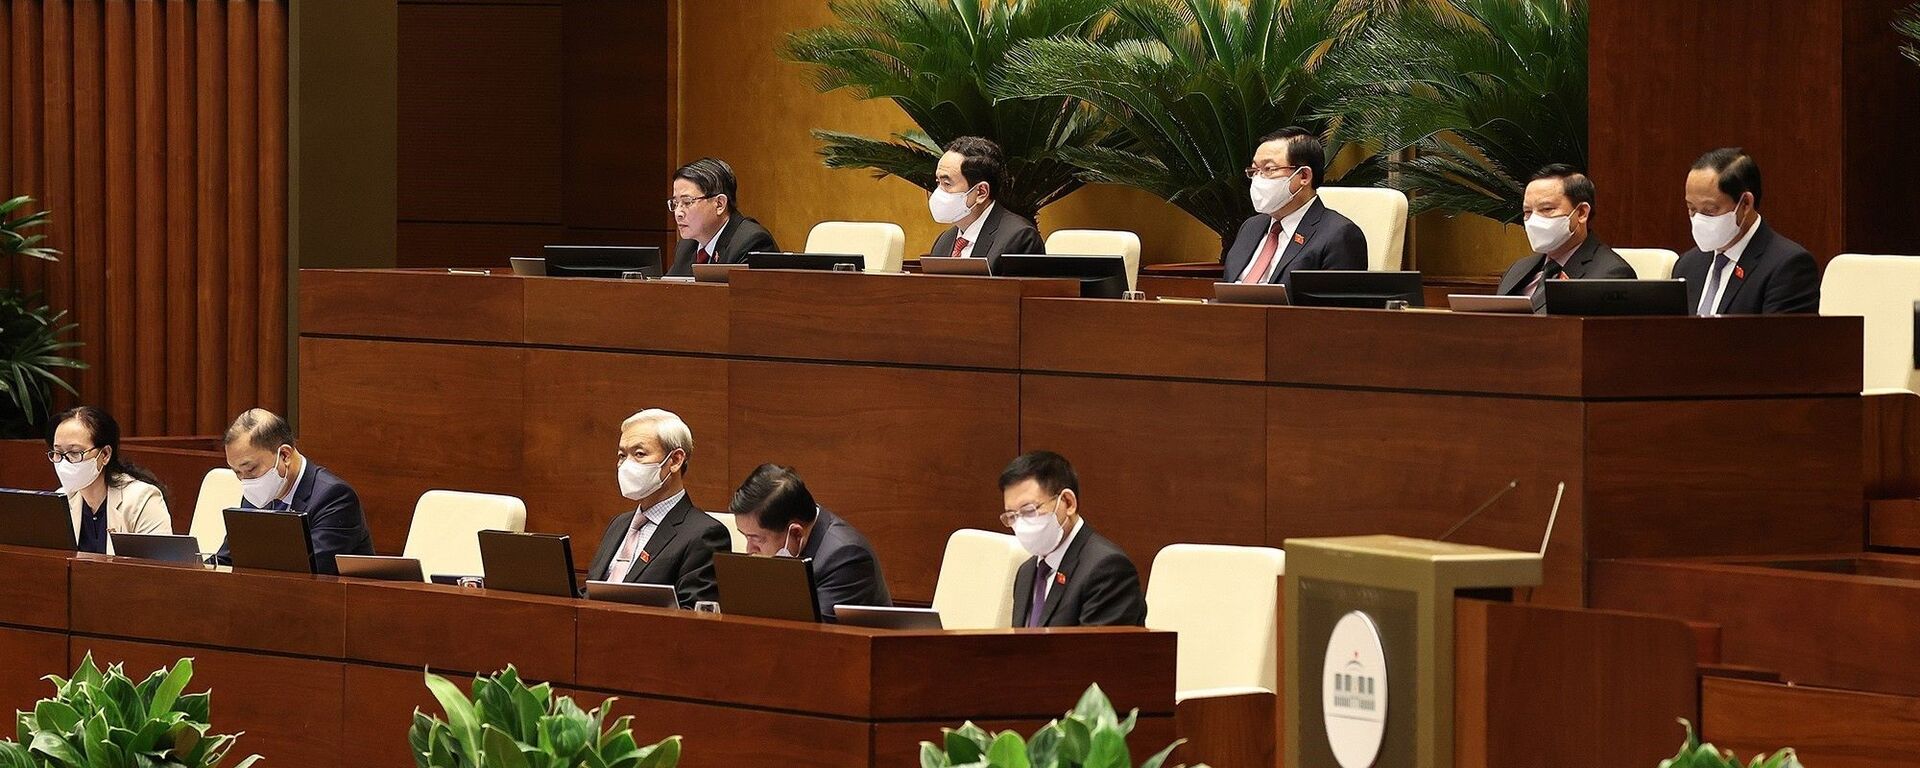 Chủ tịch Quốc hội Vương Đình Huệ và các Phó Chủ tịch điều hành phiên thảo luận - Sputnik Việt Nam, 1920, 25.07.2021